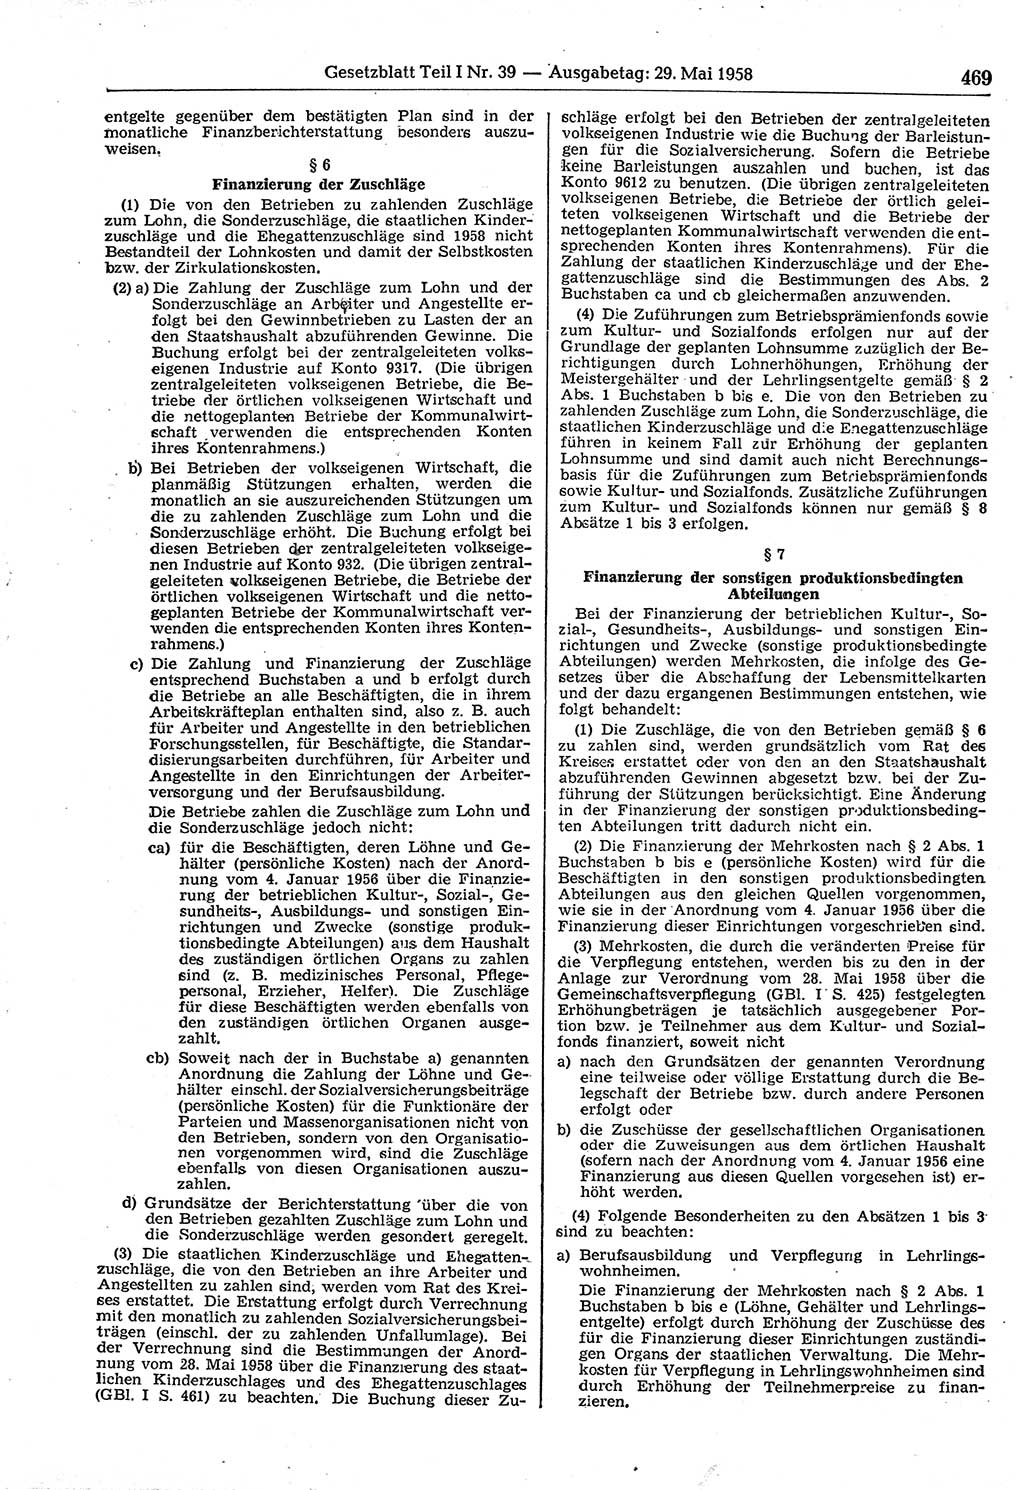 Gesetzblatt (GBl.) der Deutschen Demokratischen Republik (DDR) Teil Ⅰ 1958, Seite 469 (GBl. DDR Ⅰ 1958, S. 469)